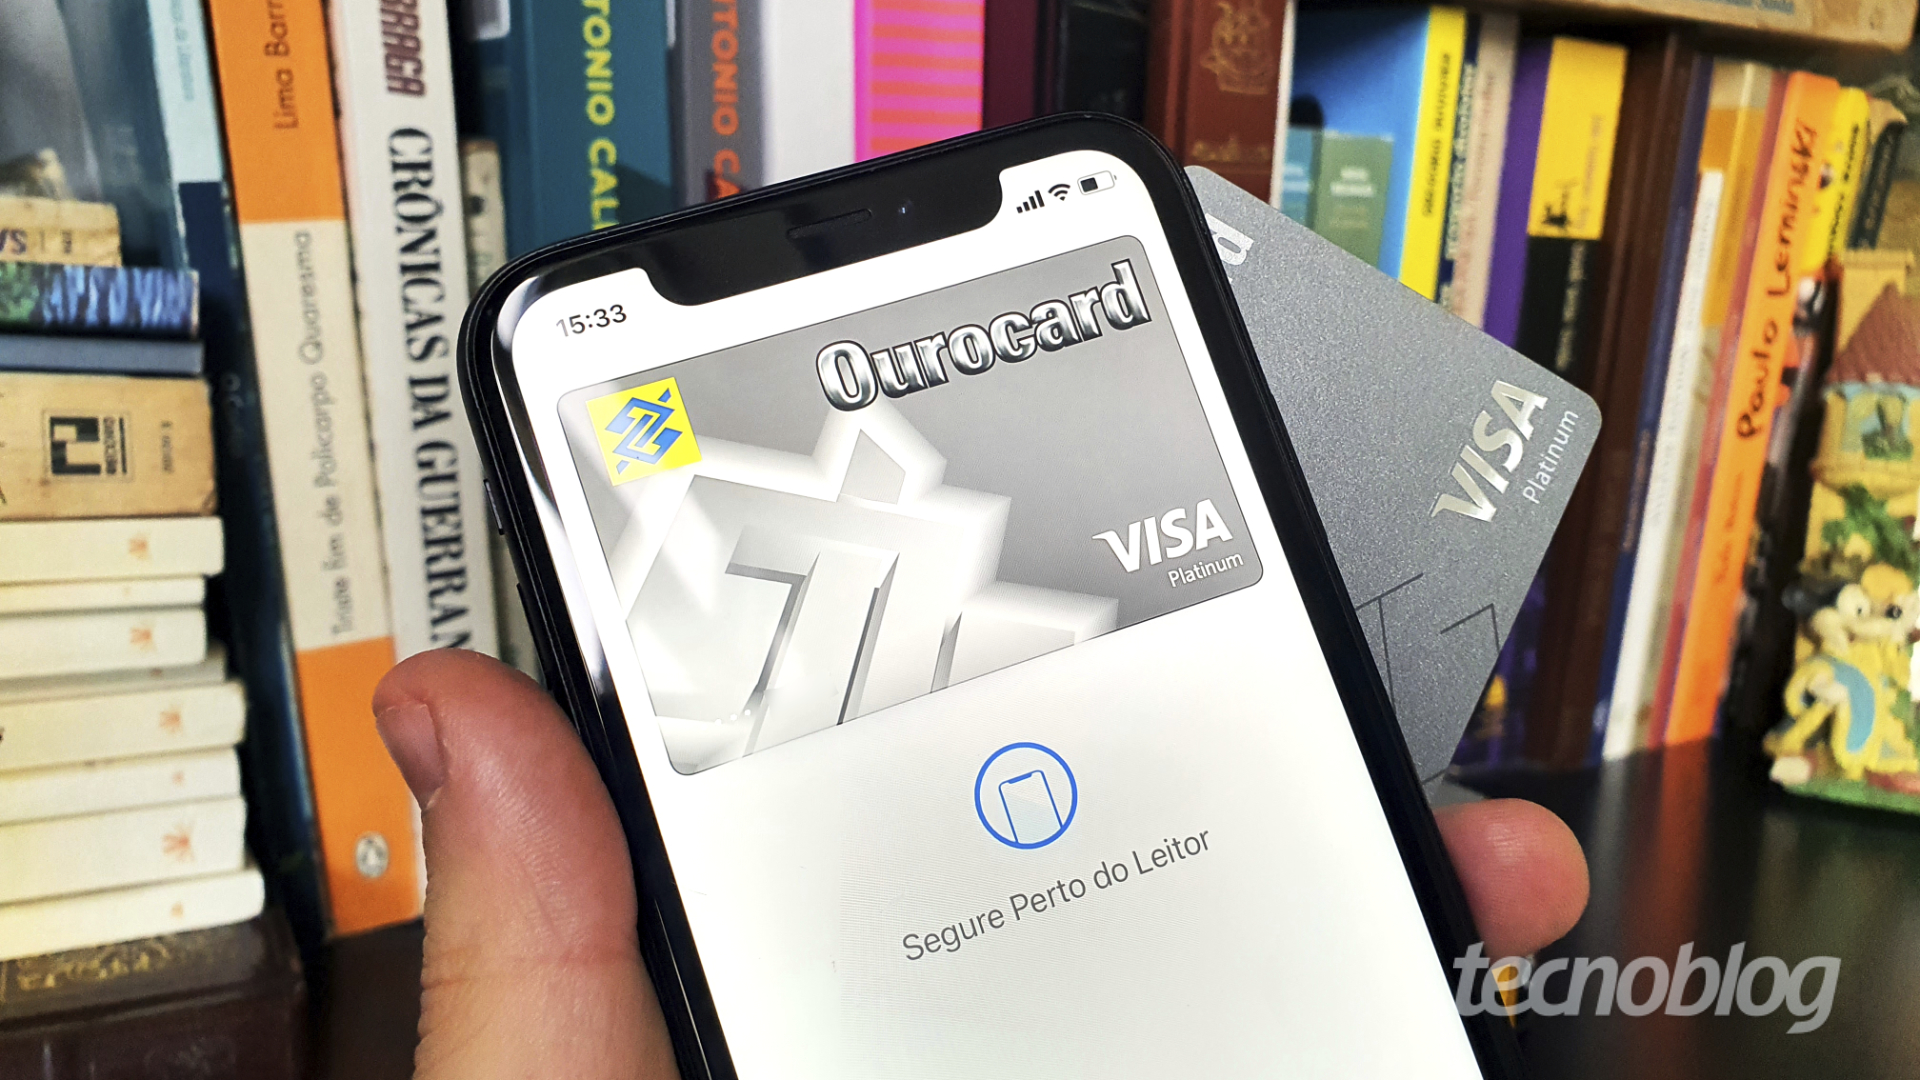 Banco do Brasil e Visa dão cashback de até R$ 150 no Apple Pay | Finanças